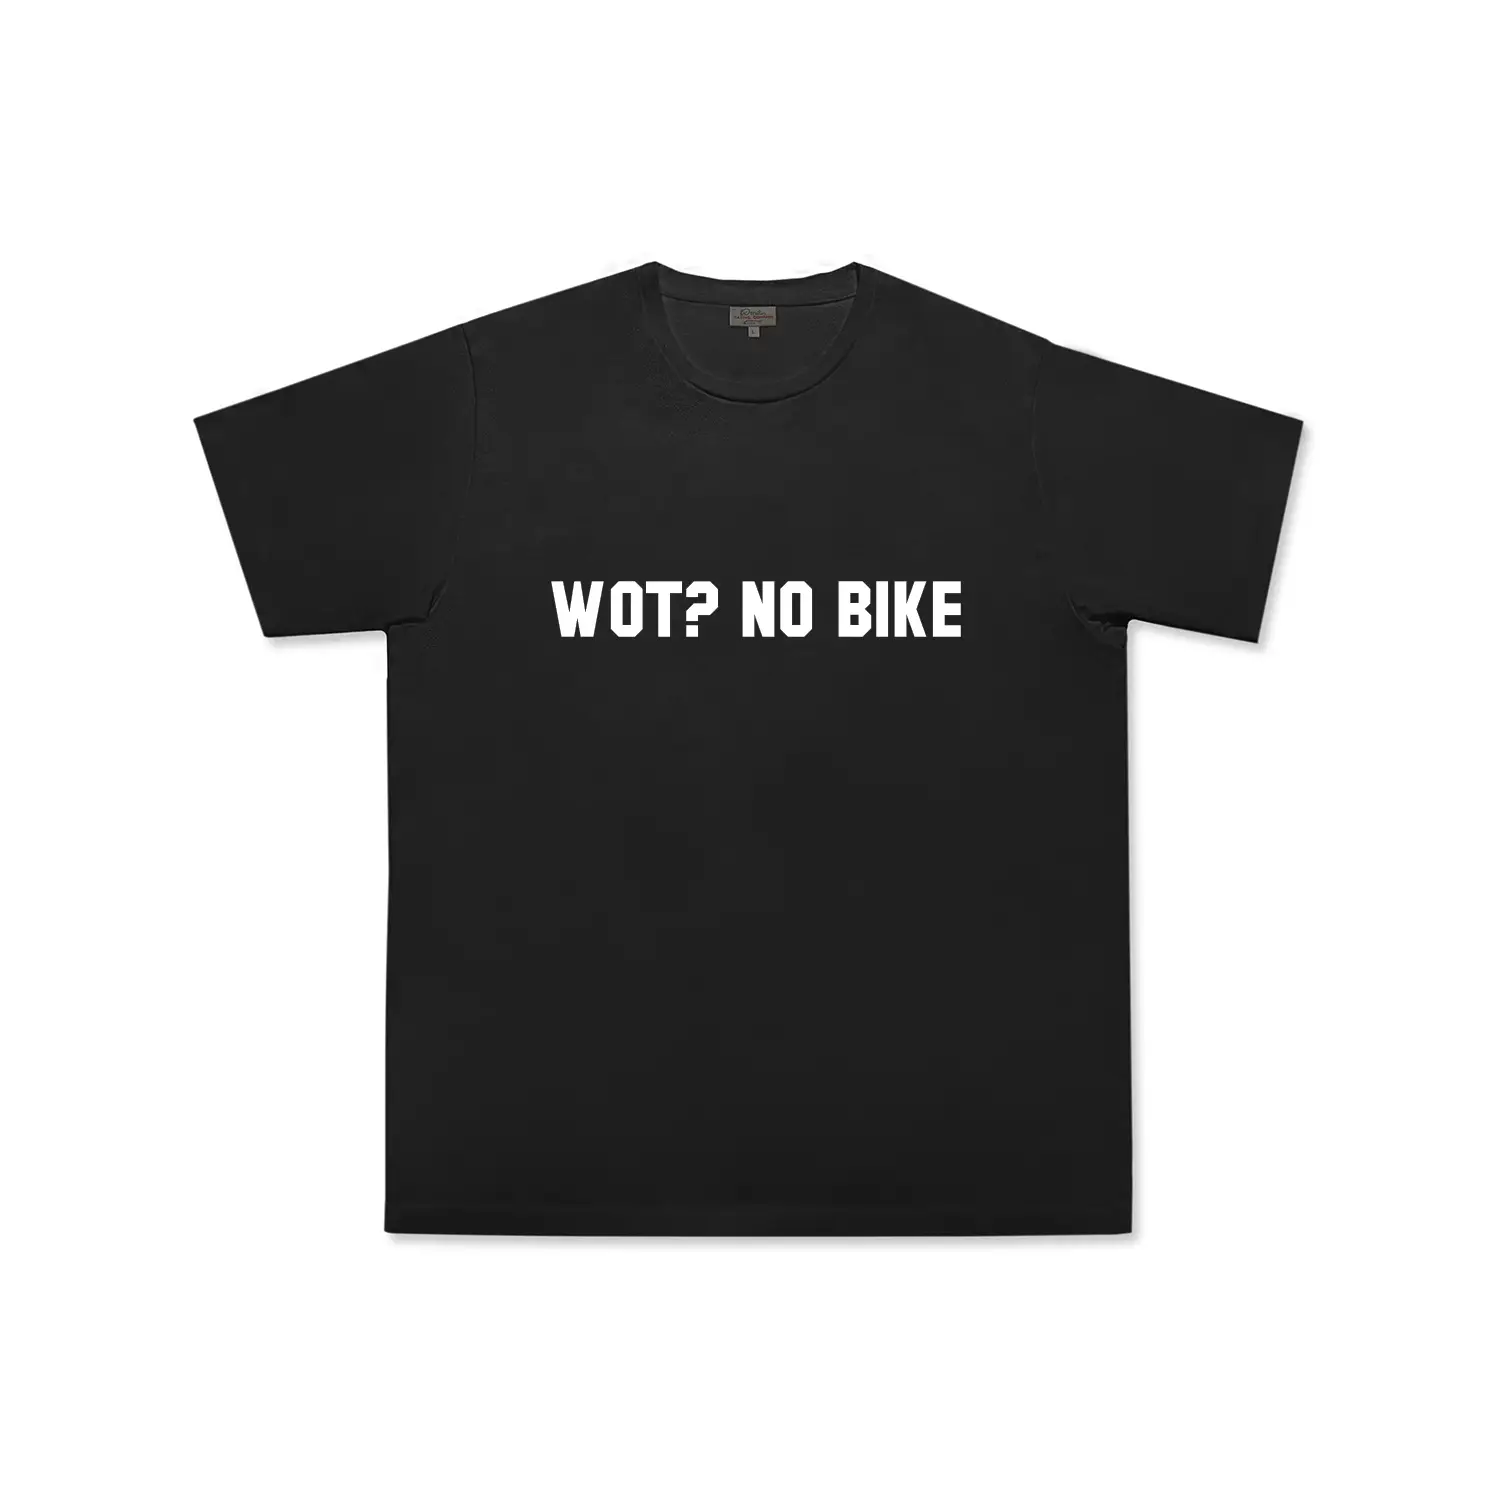 dmd.eu - WOT? NO BIKE DMD – T-shirt Wot? No Bike – front